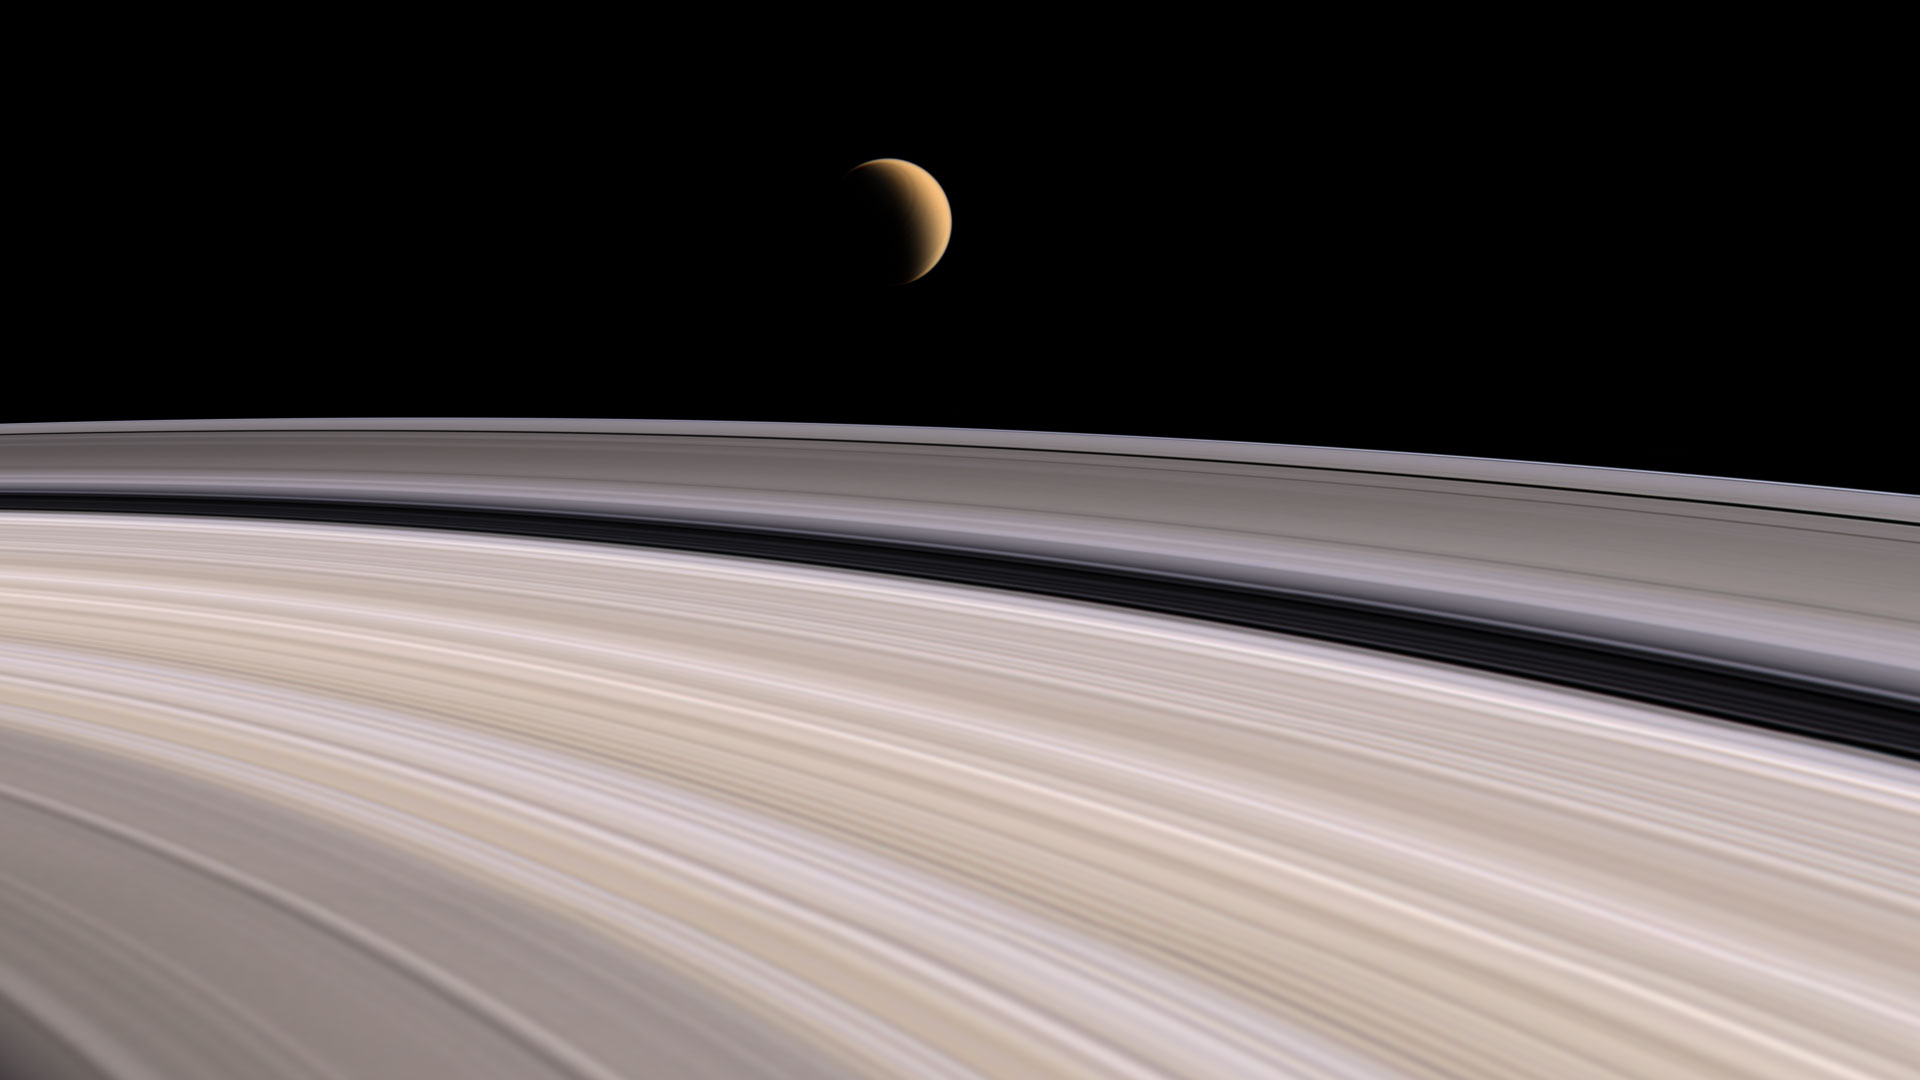 Solar System, planets, rings, Saturn - desktop wallpaper